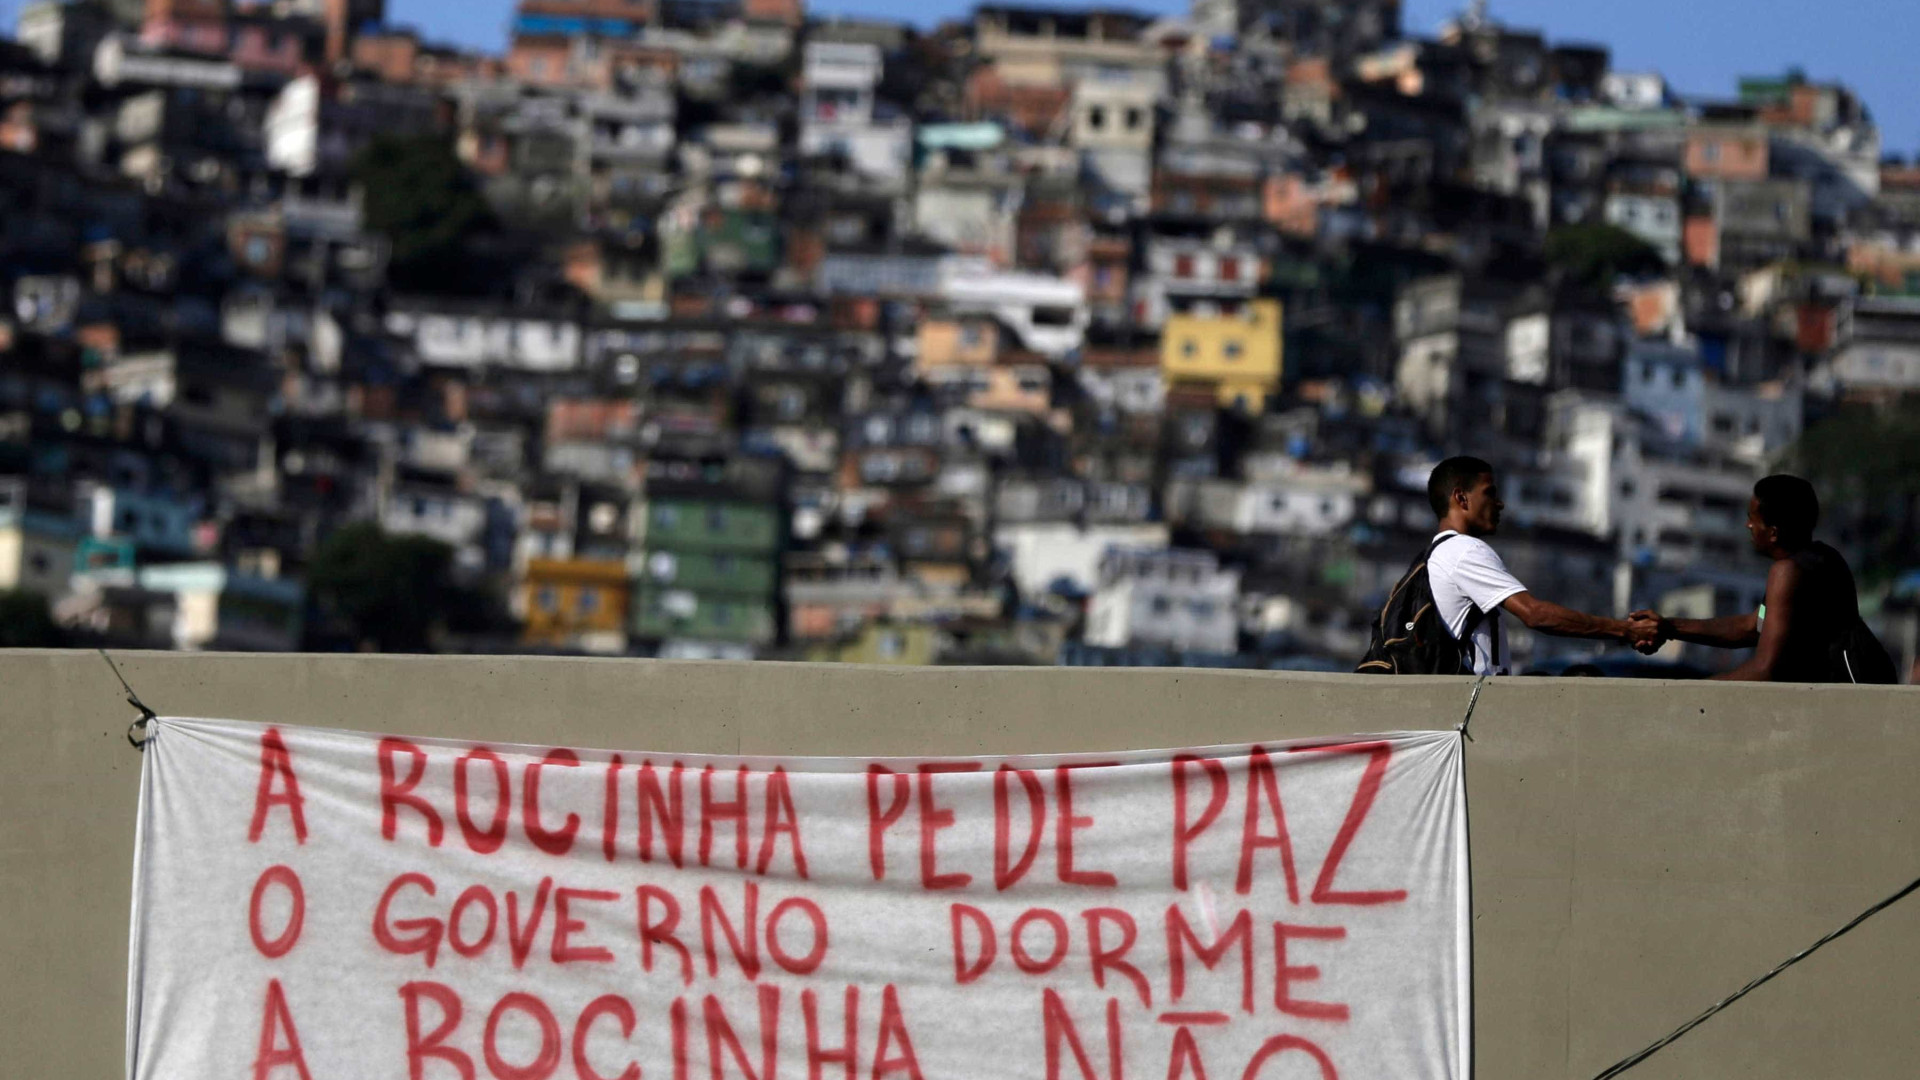 Situação na Rocinha está sendo normalizada, diz CML